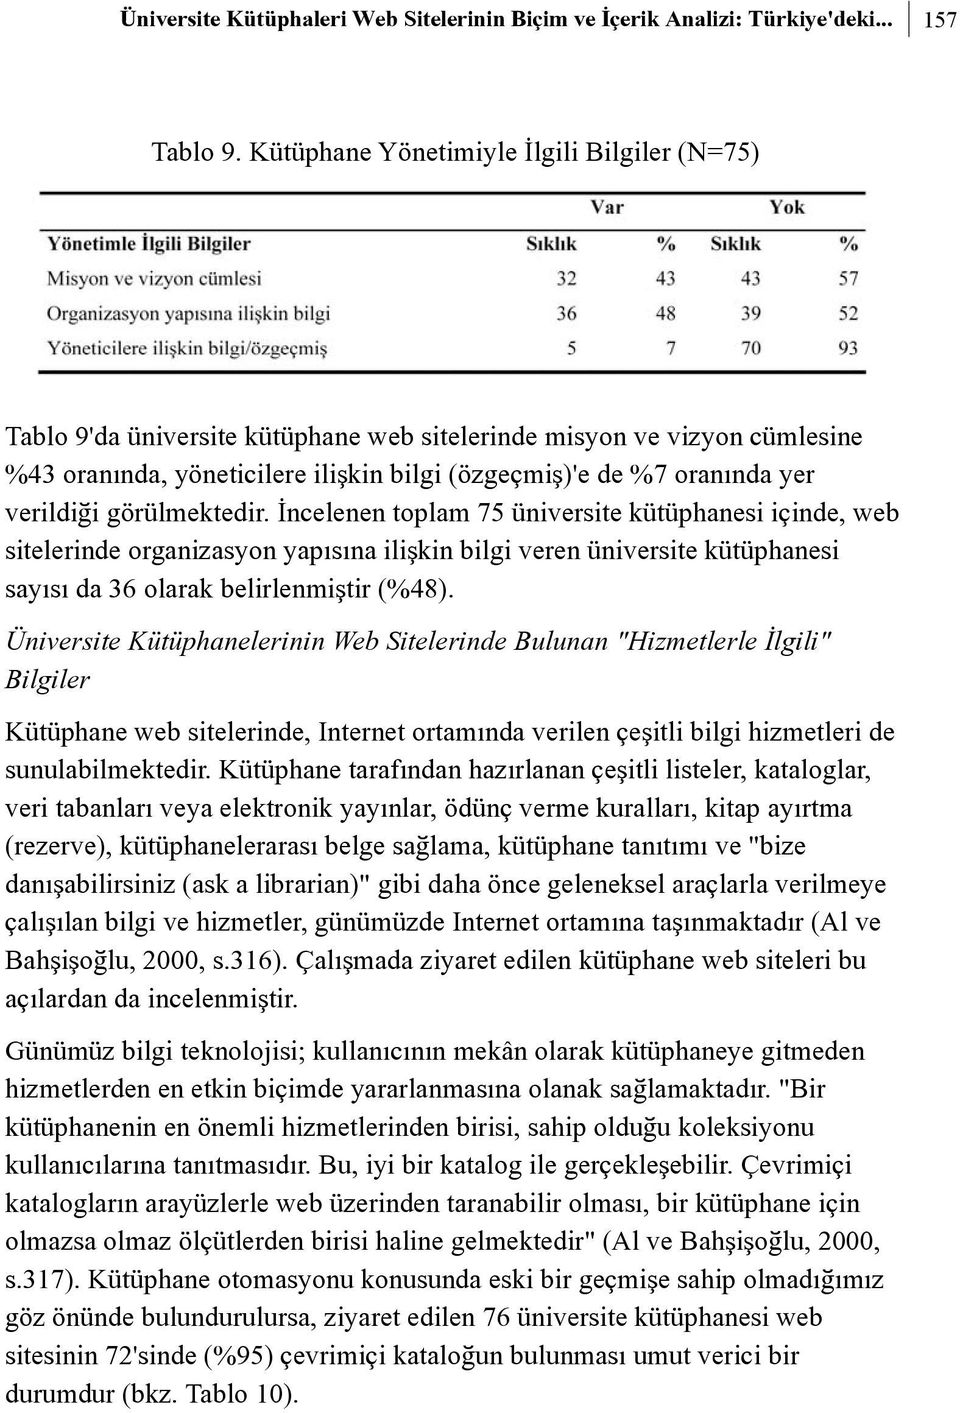 verildiði görülmektedir. Ýncelenen toplam 75 üniversite kütüphanesi içinde, web sitelerinde organizasyon yapýsýna iliþkin bilgi veren üniversite kütüphanesi sayýsý da 36 olarak belirlenmiþtir (%48).